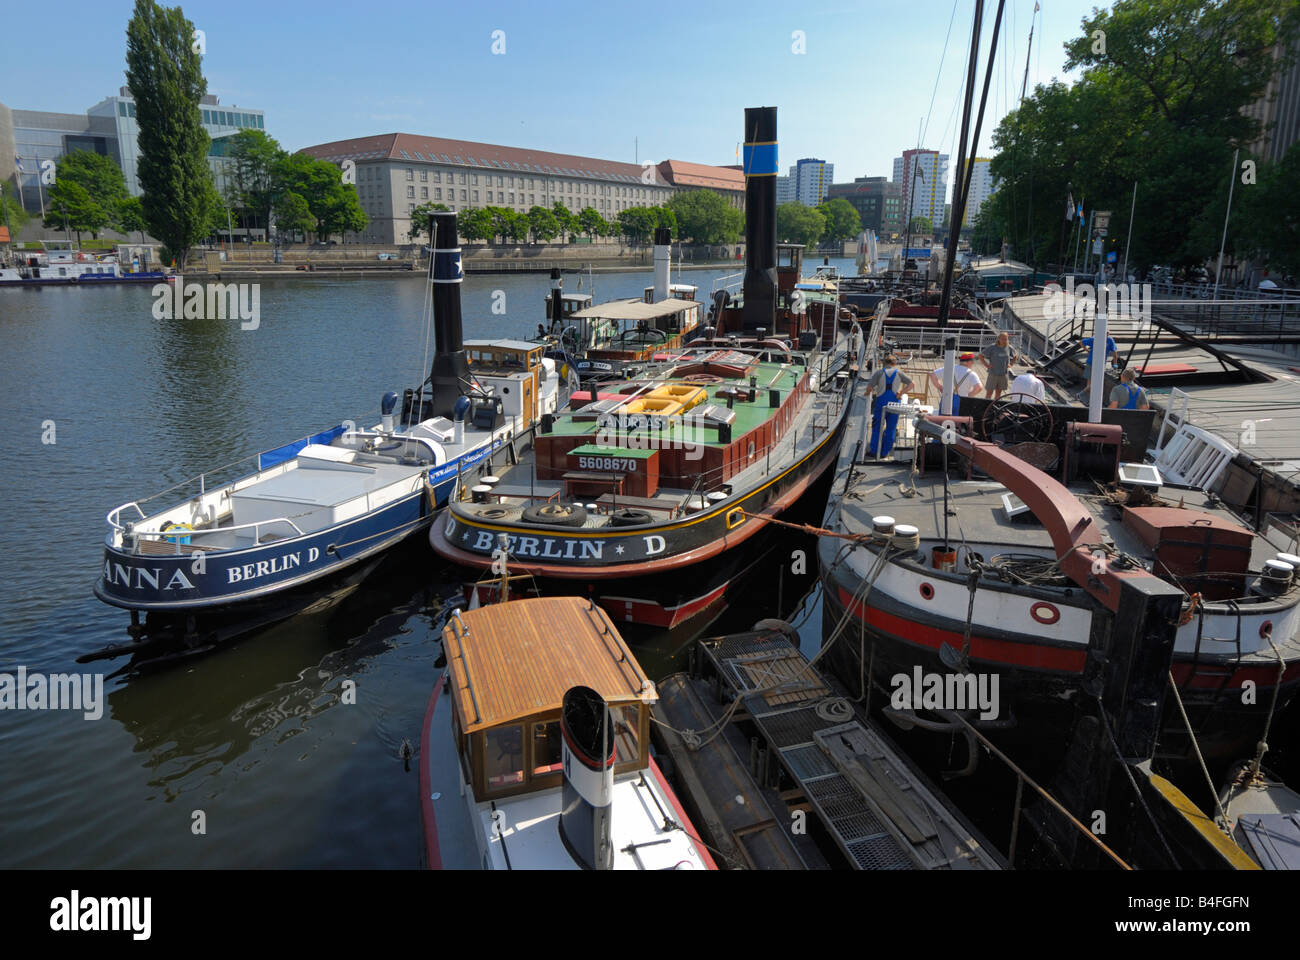 Berlin's Historical Harbour 'Historischer Hafen Berlin', Berlin, Germany Stock Photo